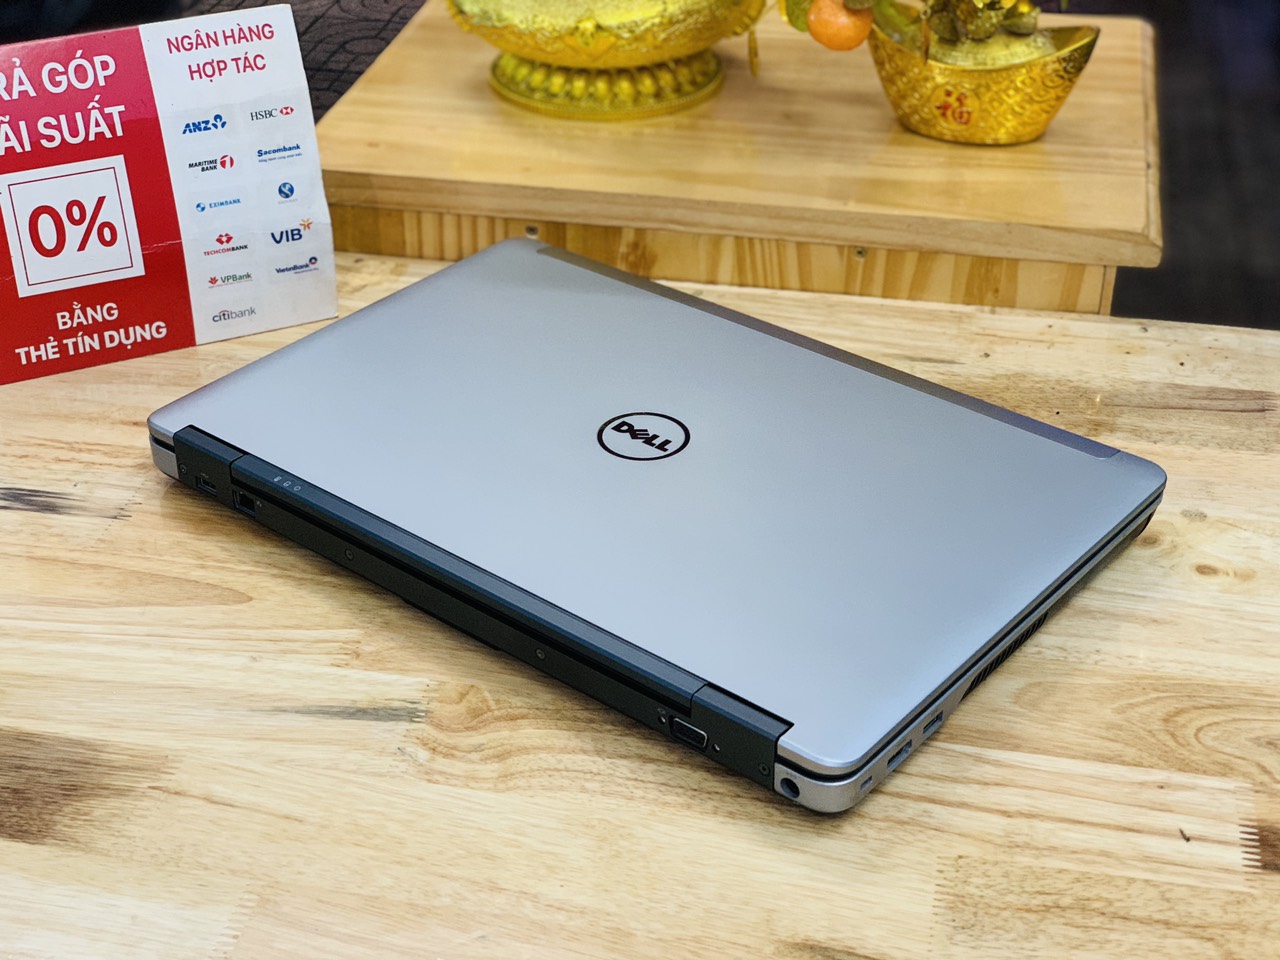 Laptop Dell Latitude E6540 i7-4600M Ram 8GB SSD 256GB 15.6 inch Siêu Bền Giá Rẻ